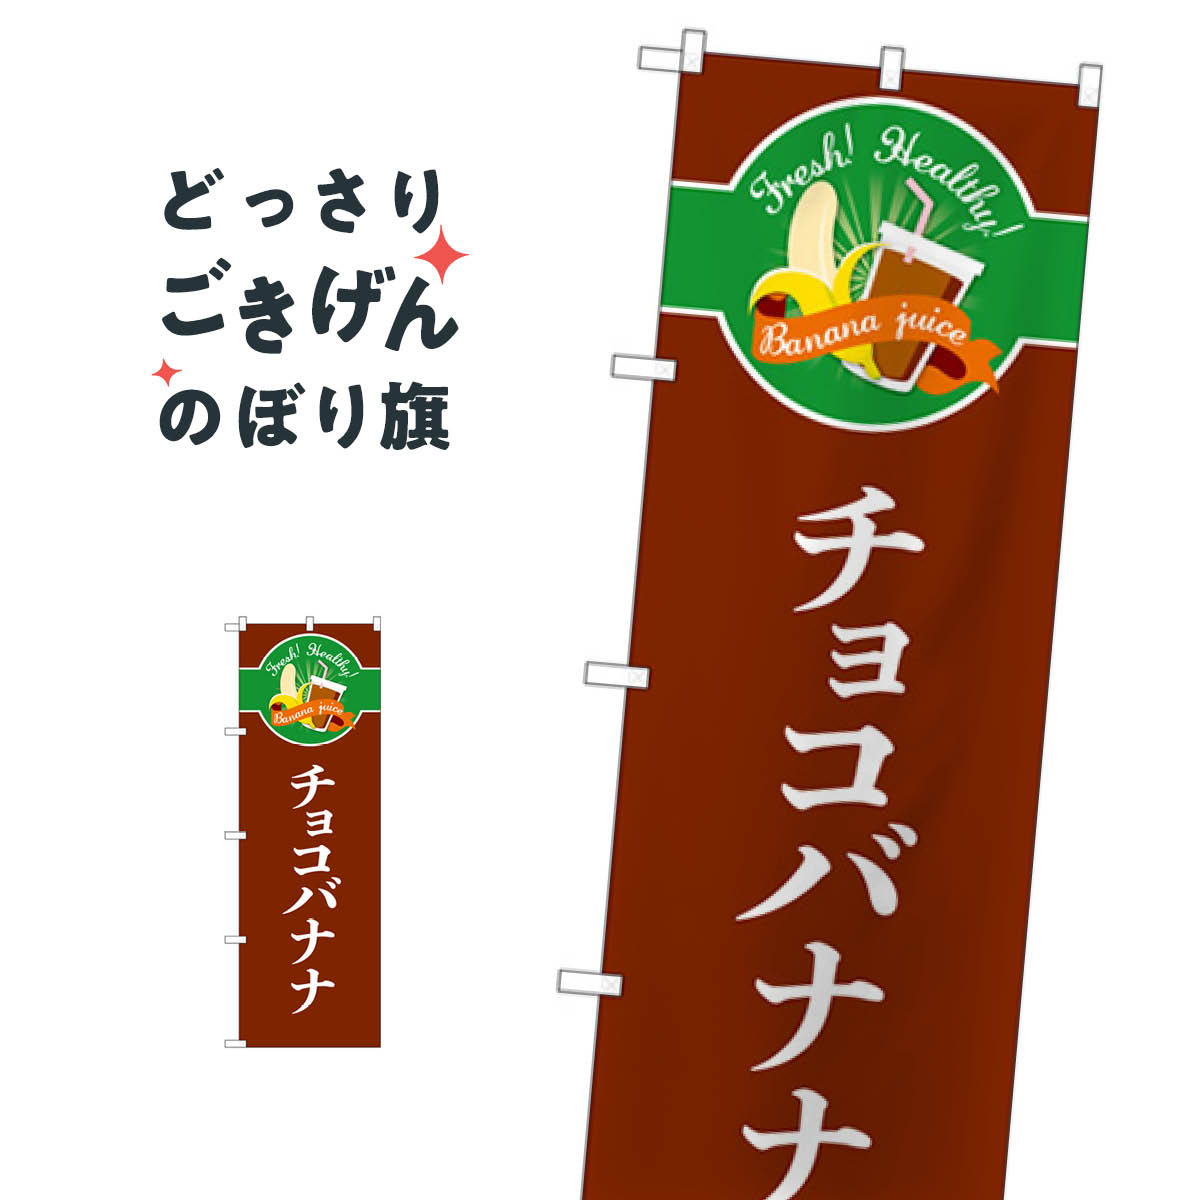 チョコバナナ のぼり旗 TR-120 屋台お菓子